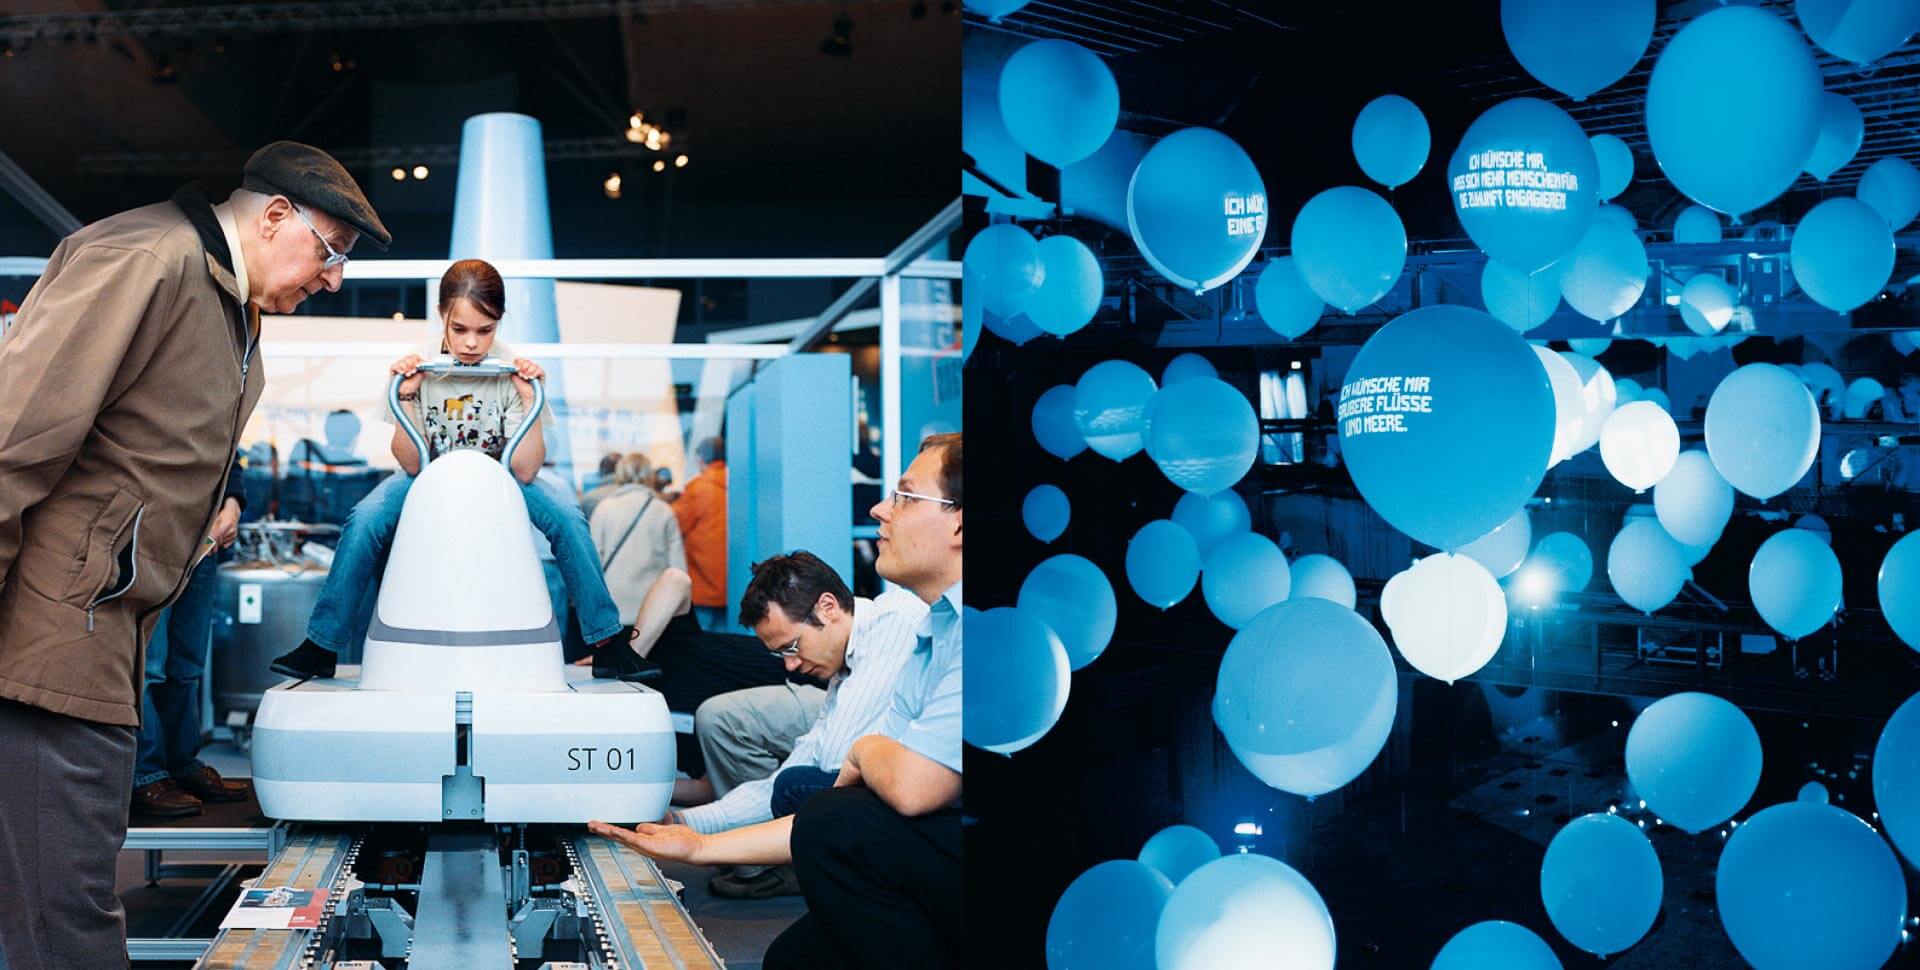 Mädchen sitzt im Ideenpark Thyssenkrupp auf technischem Gerät, daneben blaue Luftballons mit Schriftaufzug